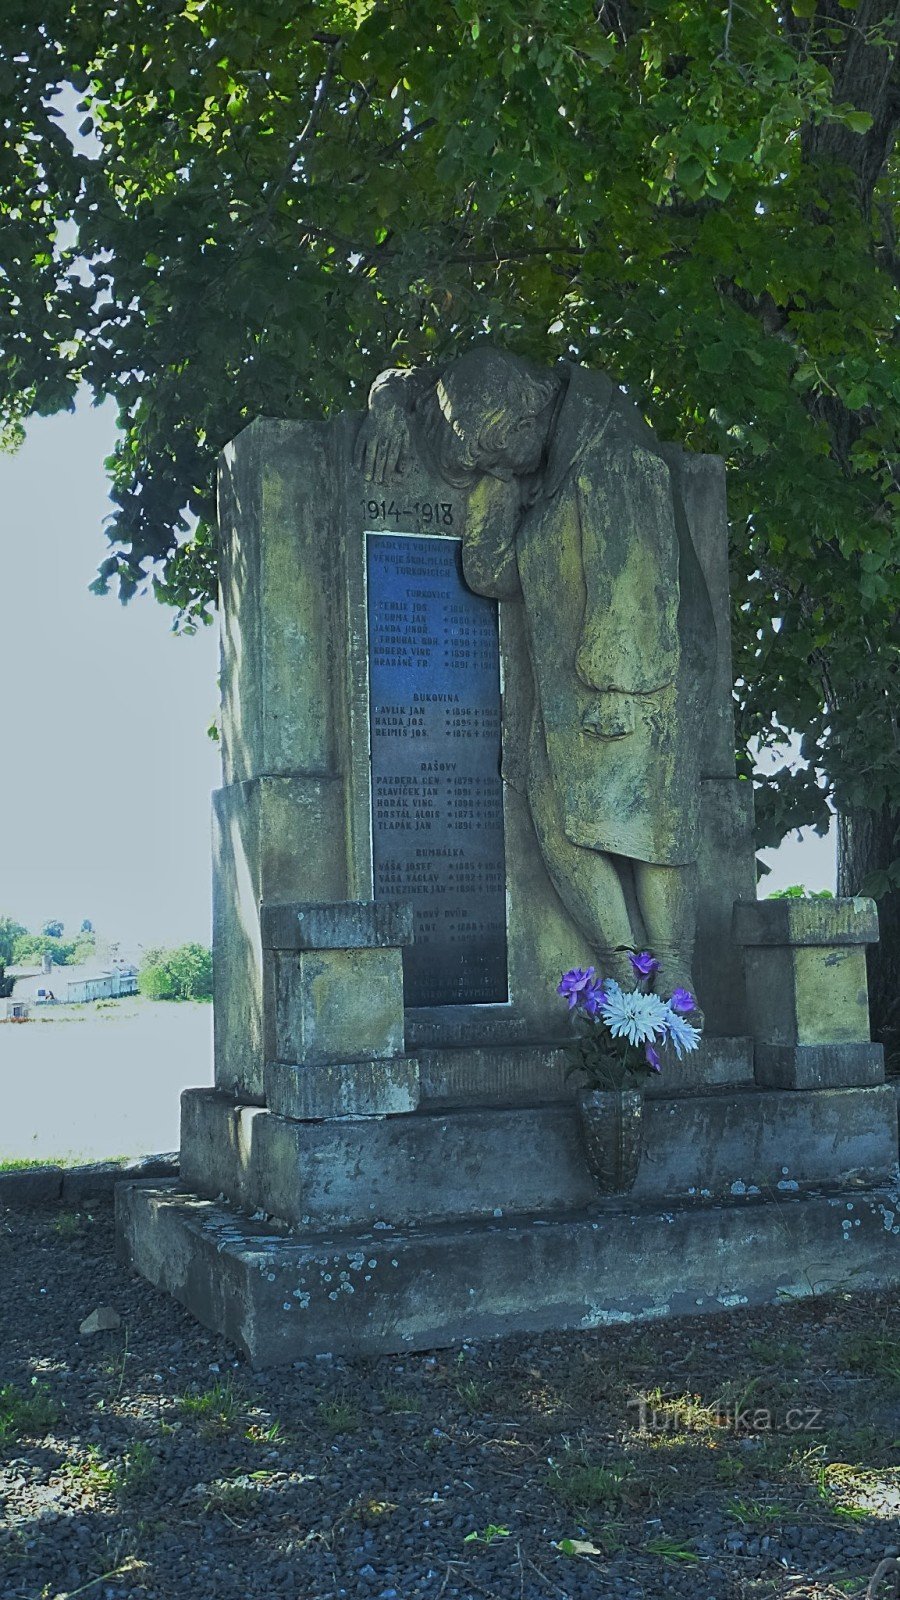 19 nomes de soldados mortos das aldeias vizinhas estão gravados no monumento